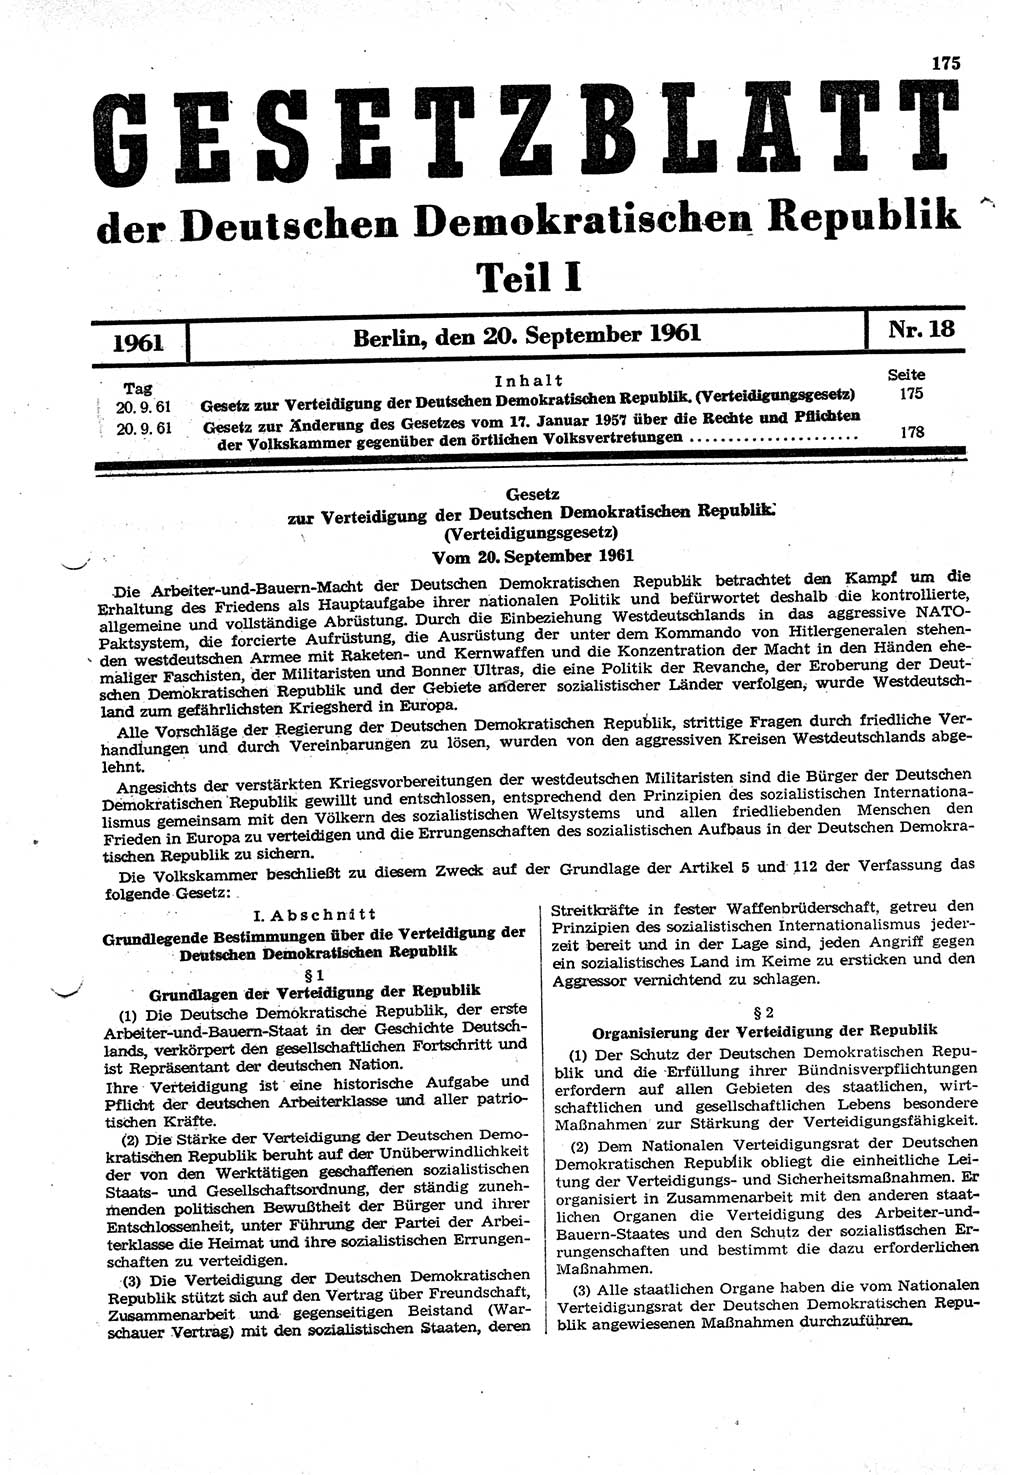 Gesetzblatt (GBl.) der Deutschen Demokratischen Republik (DDR) Teil Ⅰ 1961, Seite 175 (GBl. DDR Ⅰ 1961, S. 175)